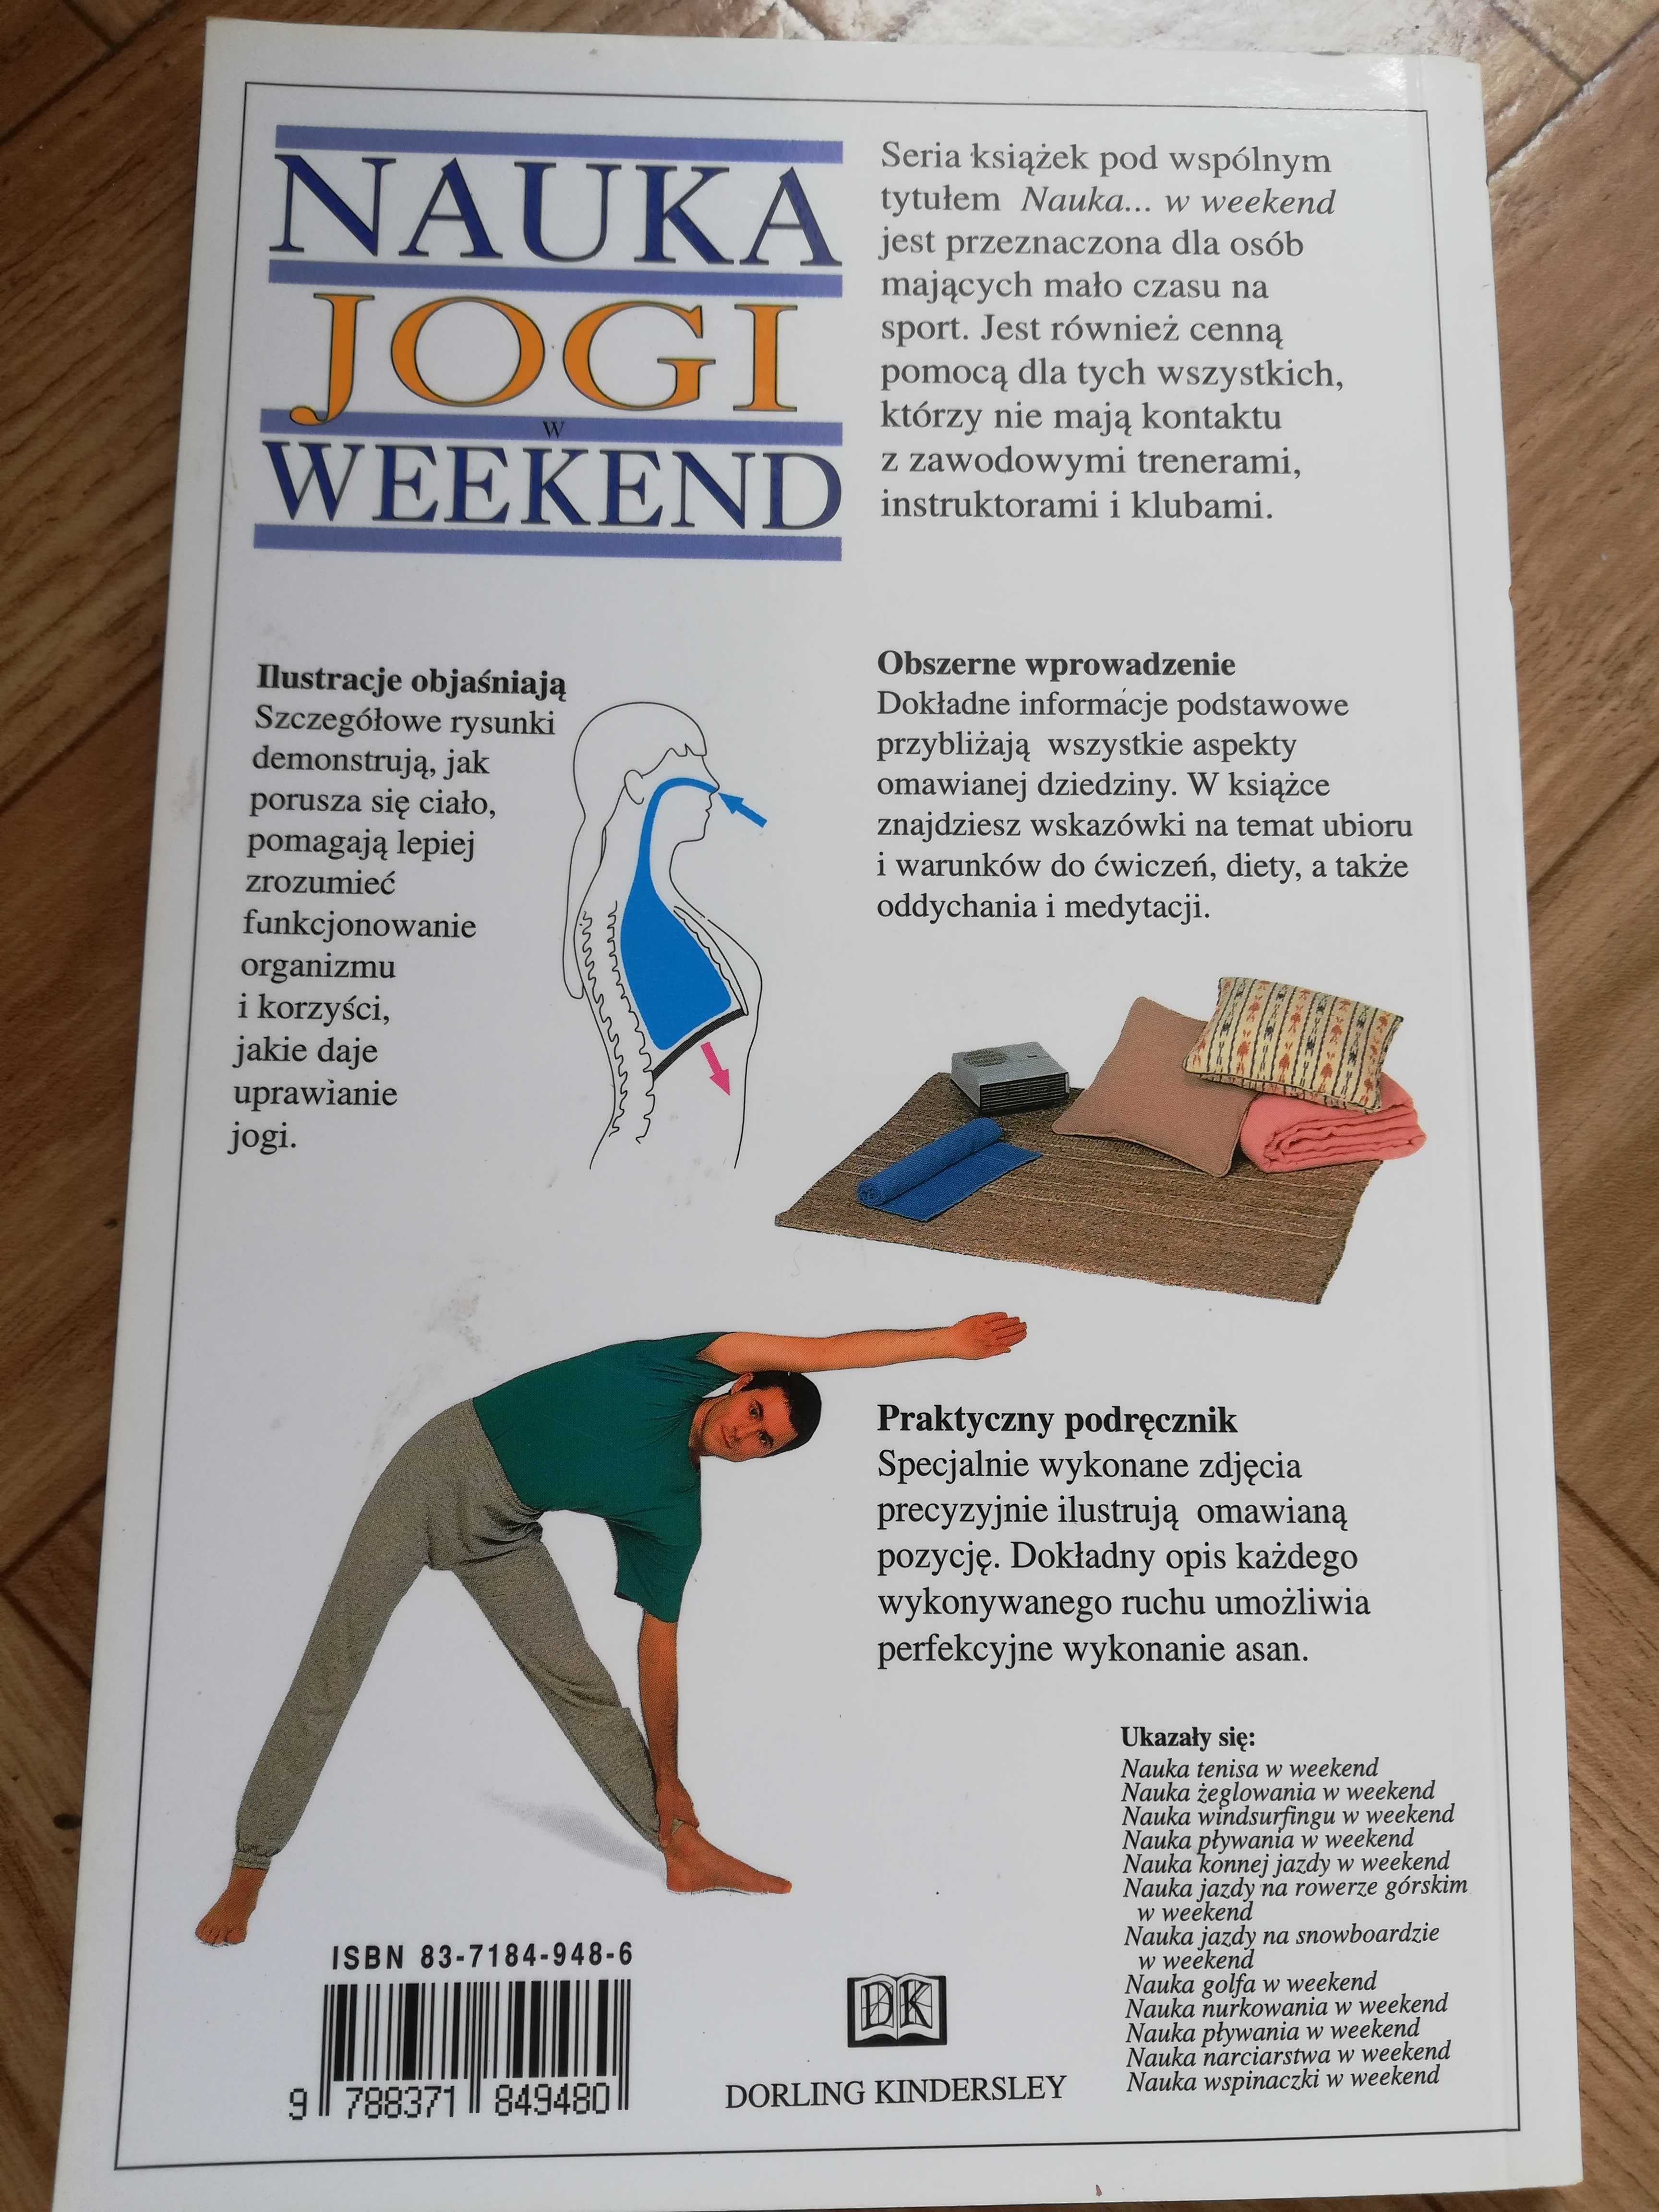 Nauka jogi w weekend"